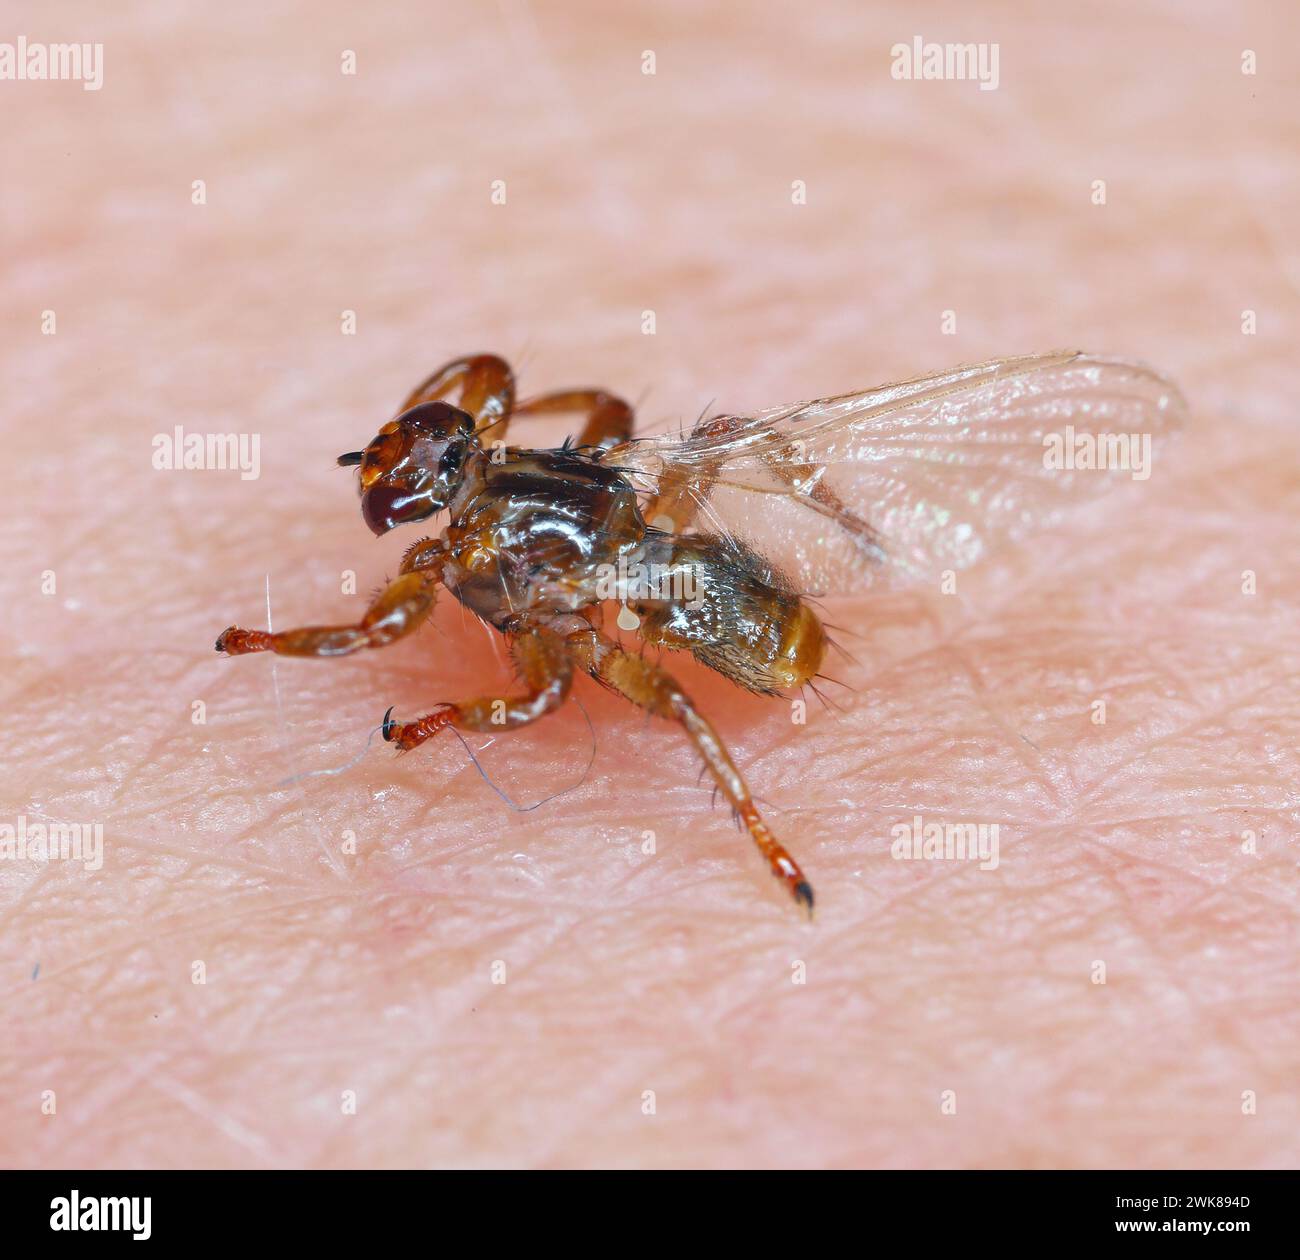 Un macro primo piano di mosca parassita dei cervi, Lipoptena cervi, su un taglio peloso. A volte viene chiamata la zecca volante. Foto Stock